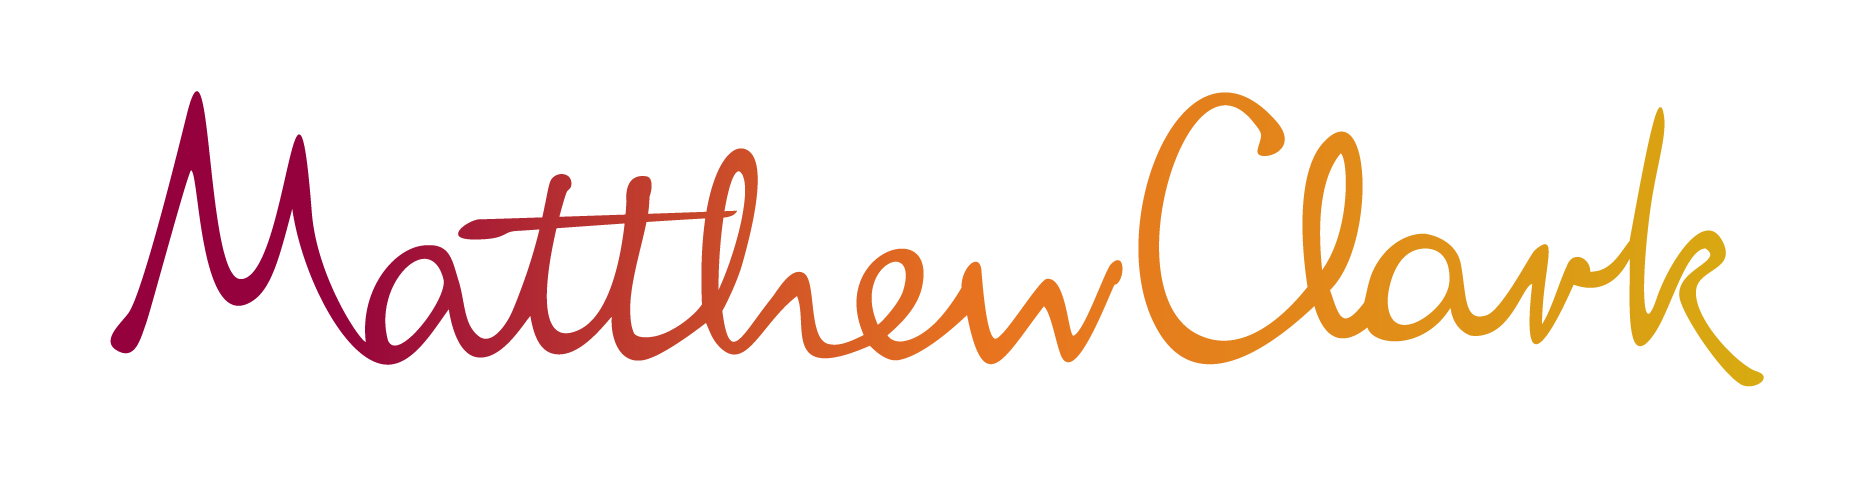 matthew-clark-logo